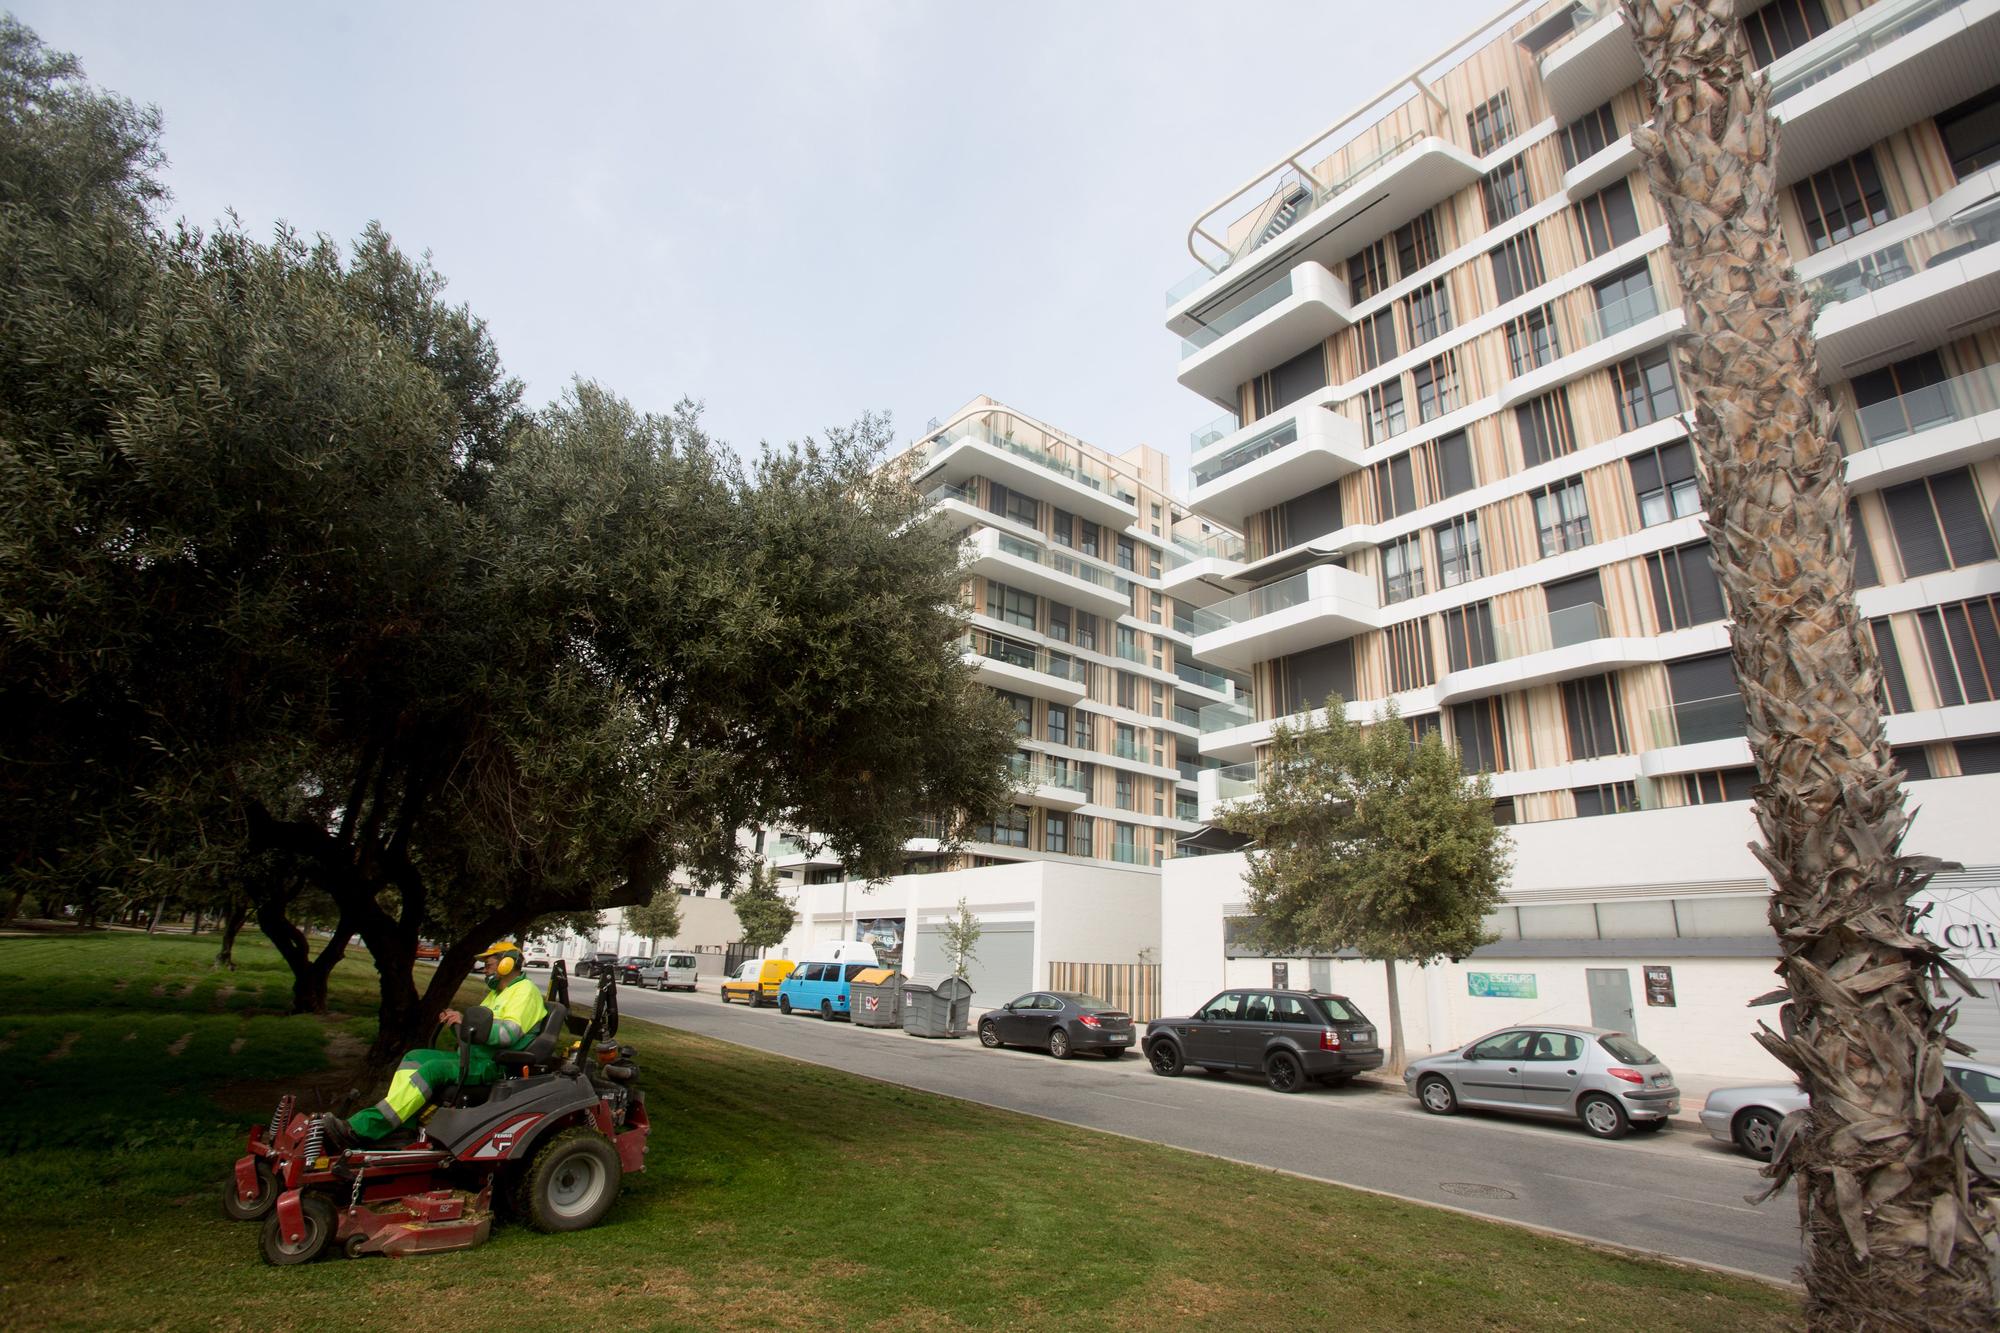 La crisis aumenta la diferencia del precio de los pisos entre los barrios ricos y humildes de la provincia de Alicante